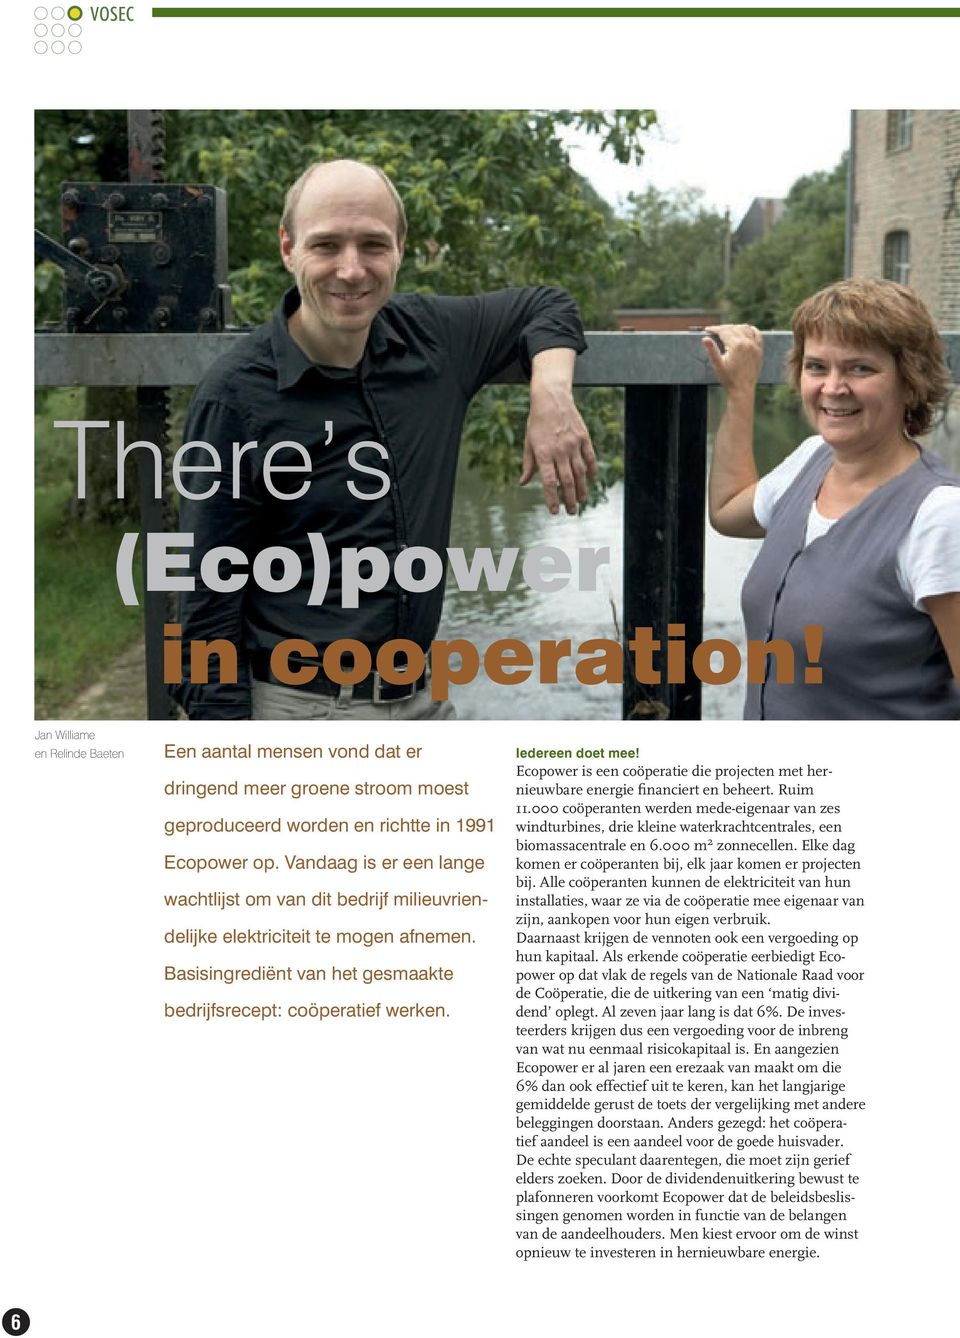 Ecopower is een coöperatie die projecten met hernieuwbare energie financiert en beheert. Ruim 11.